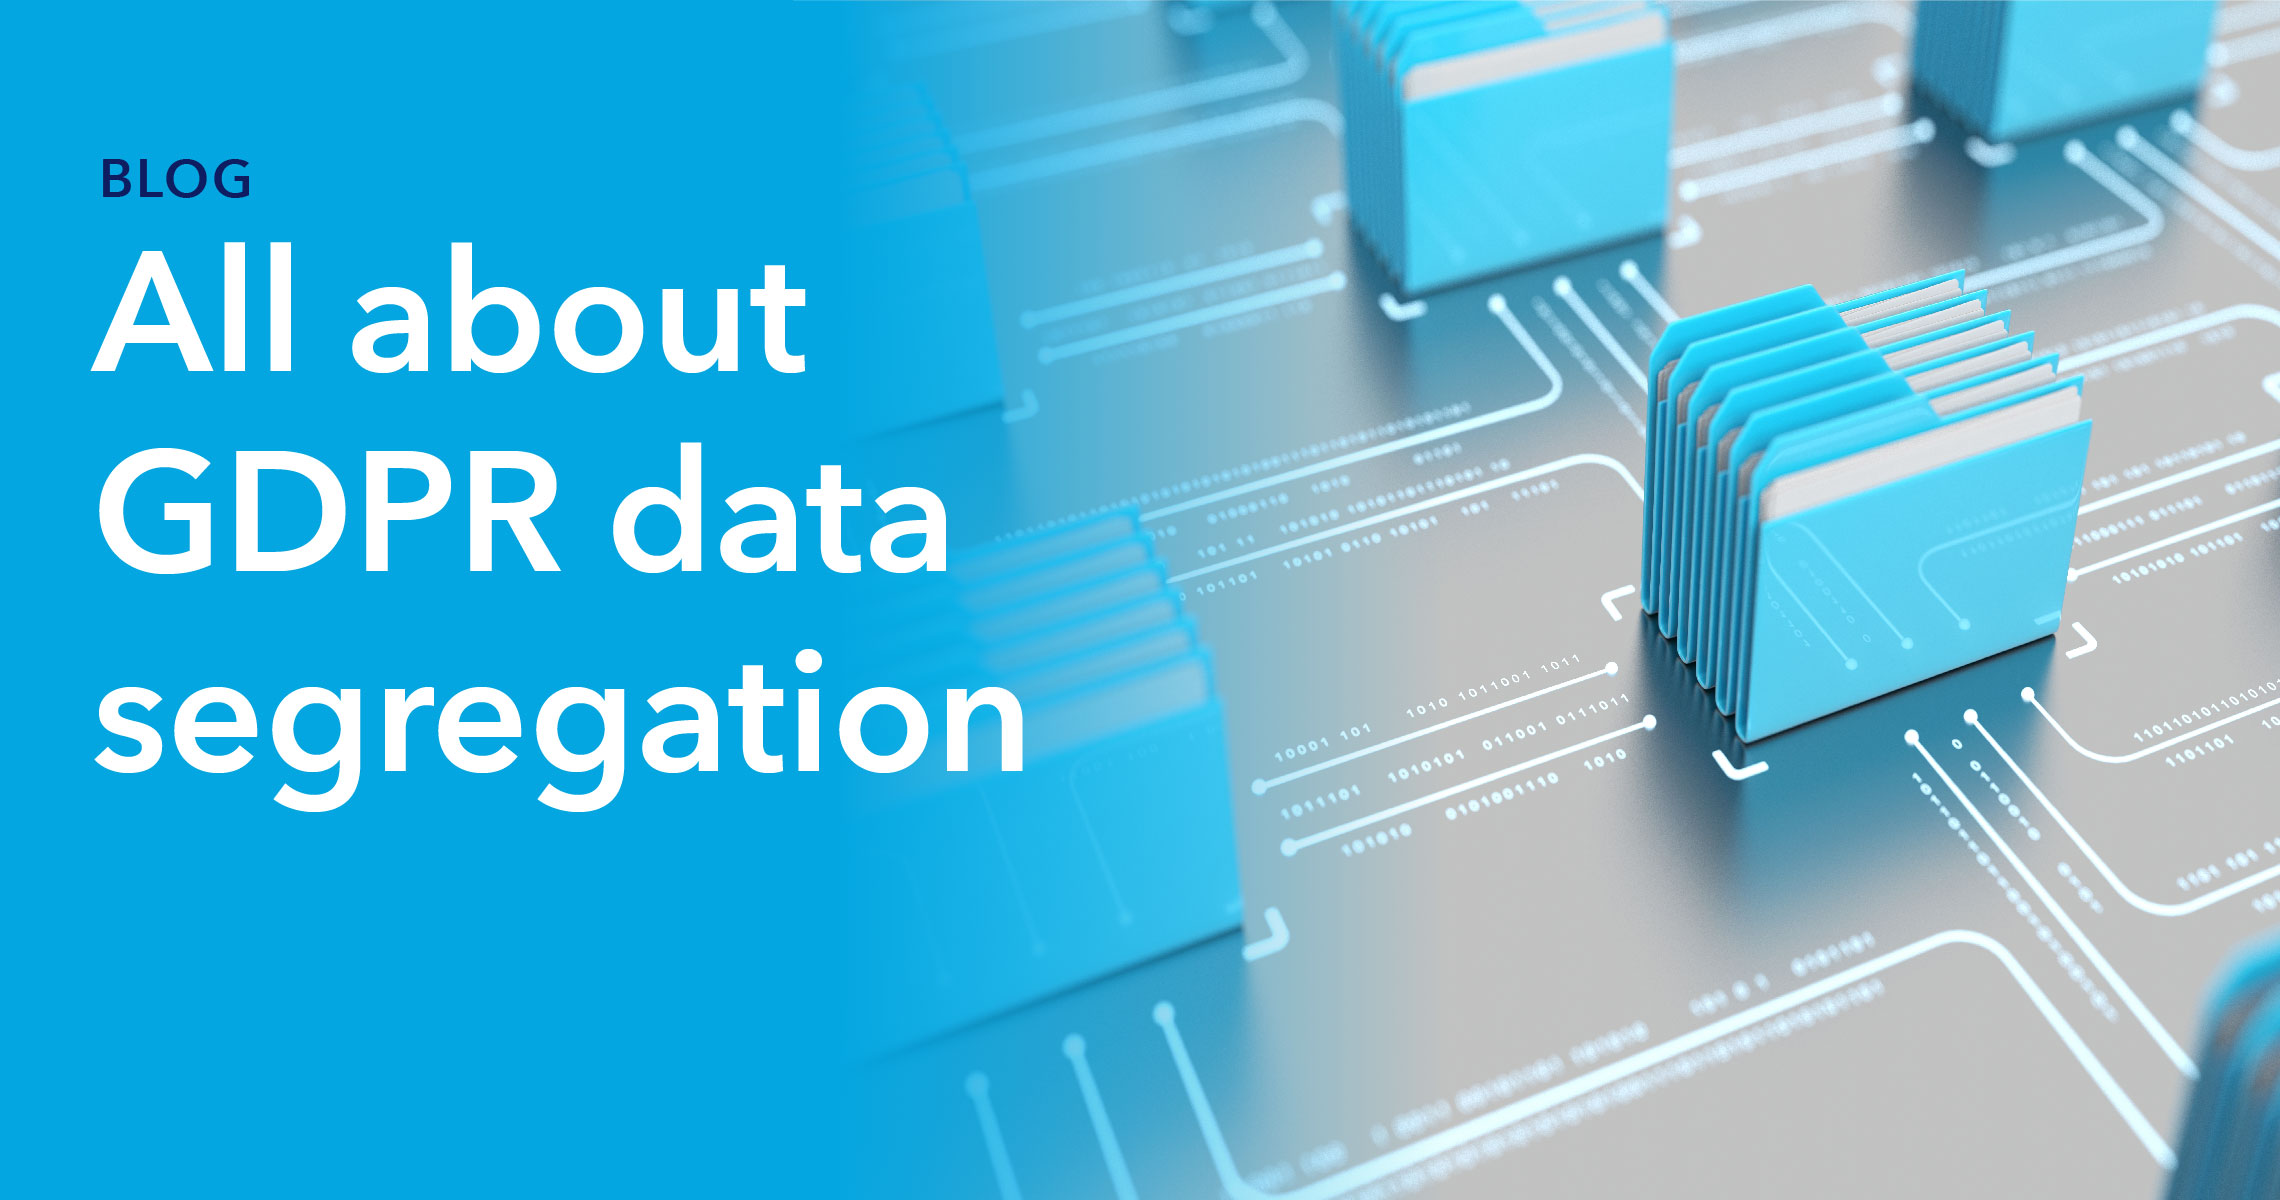 Blog header - All about GDPR data segregation